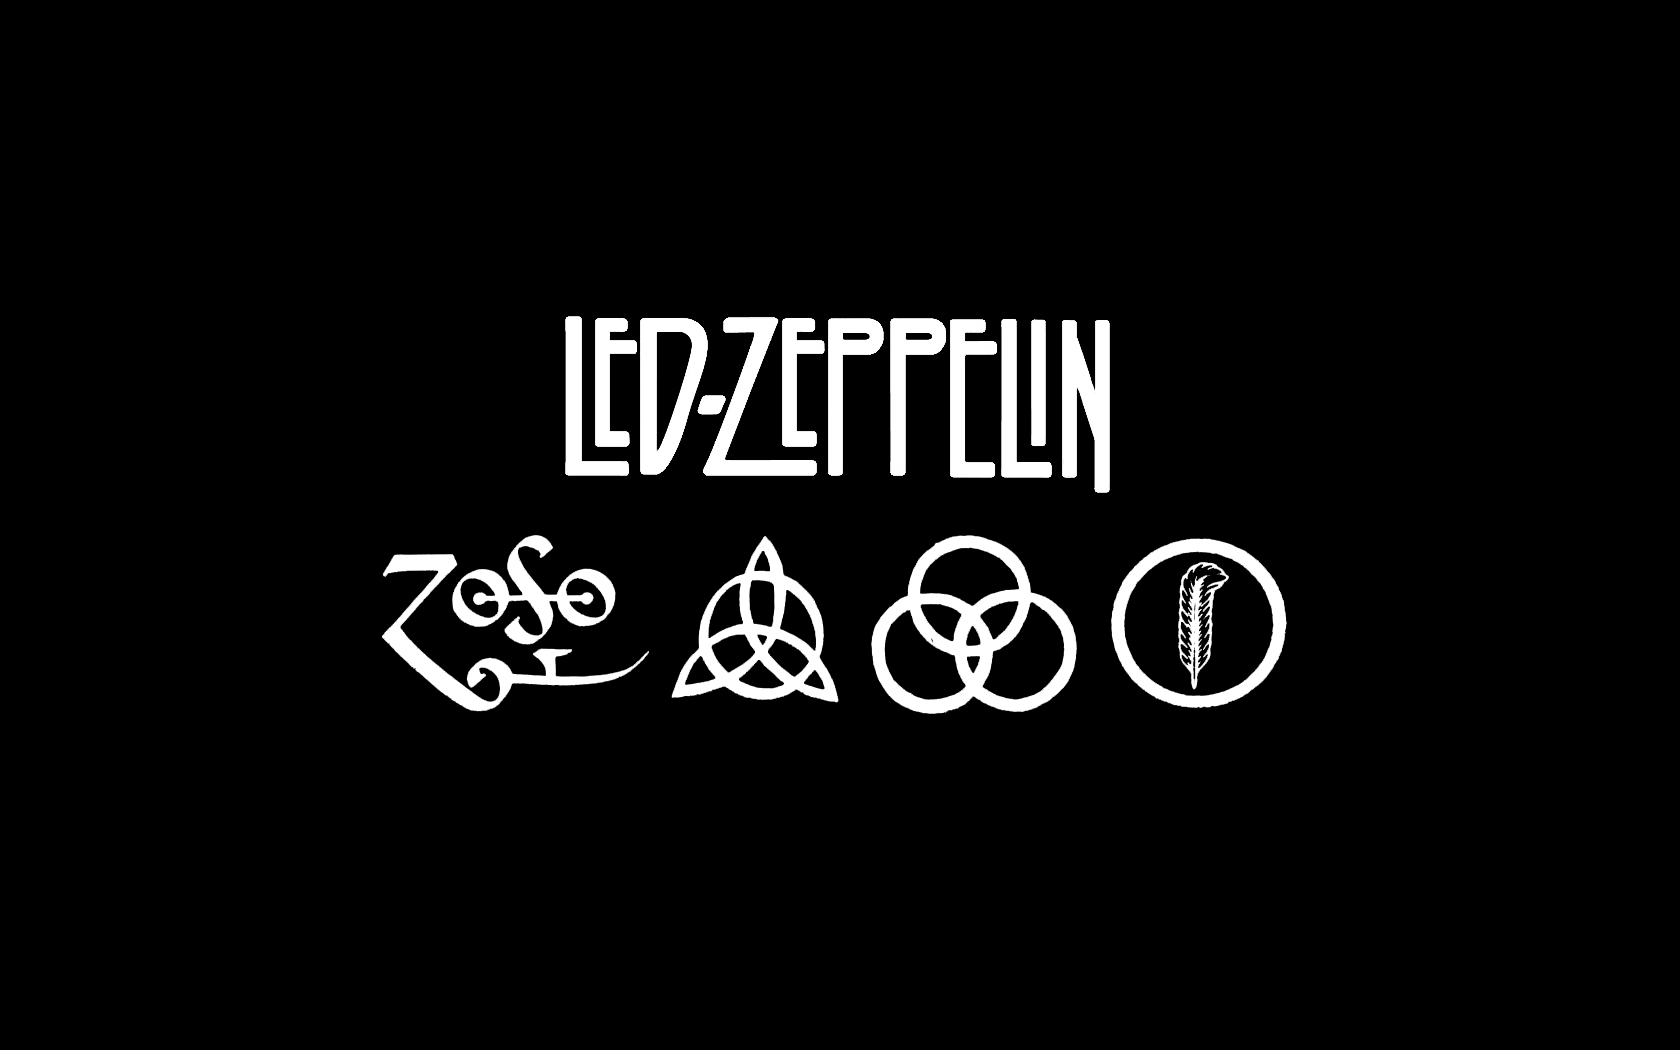 Led Zeppelin HD Wallpaper Background